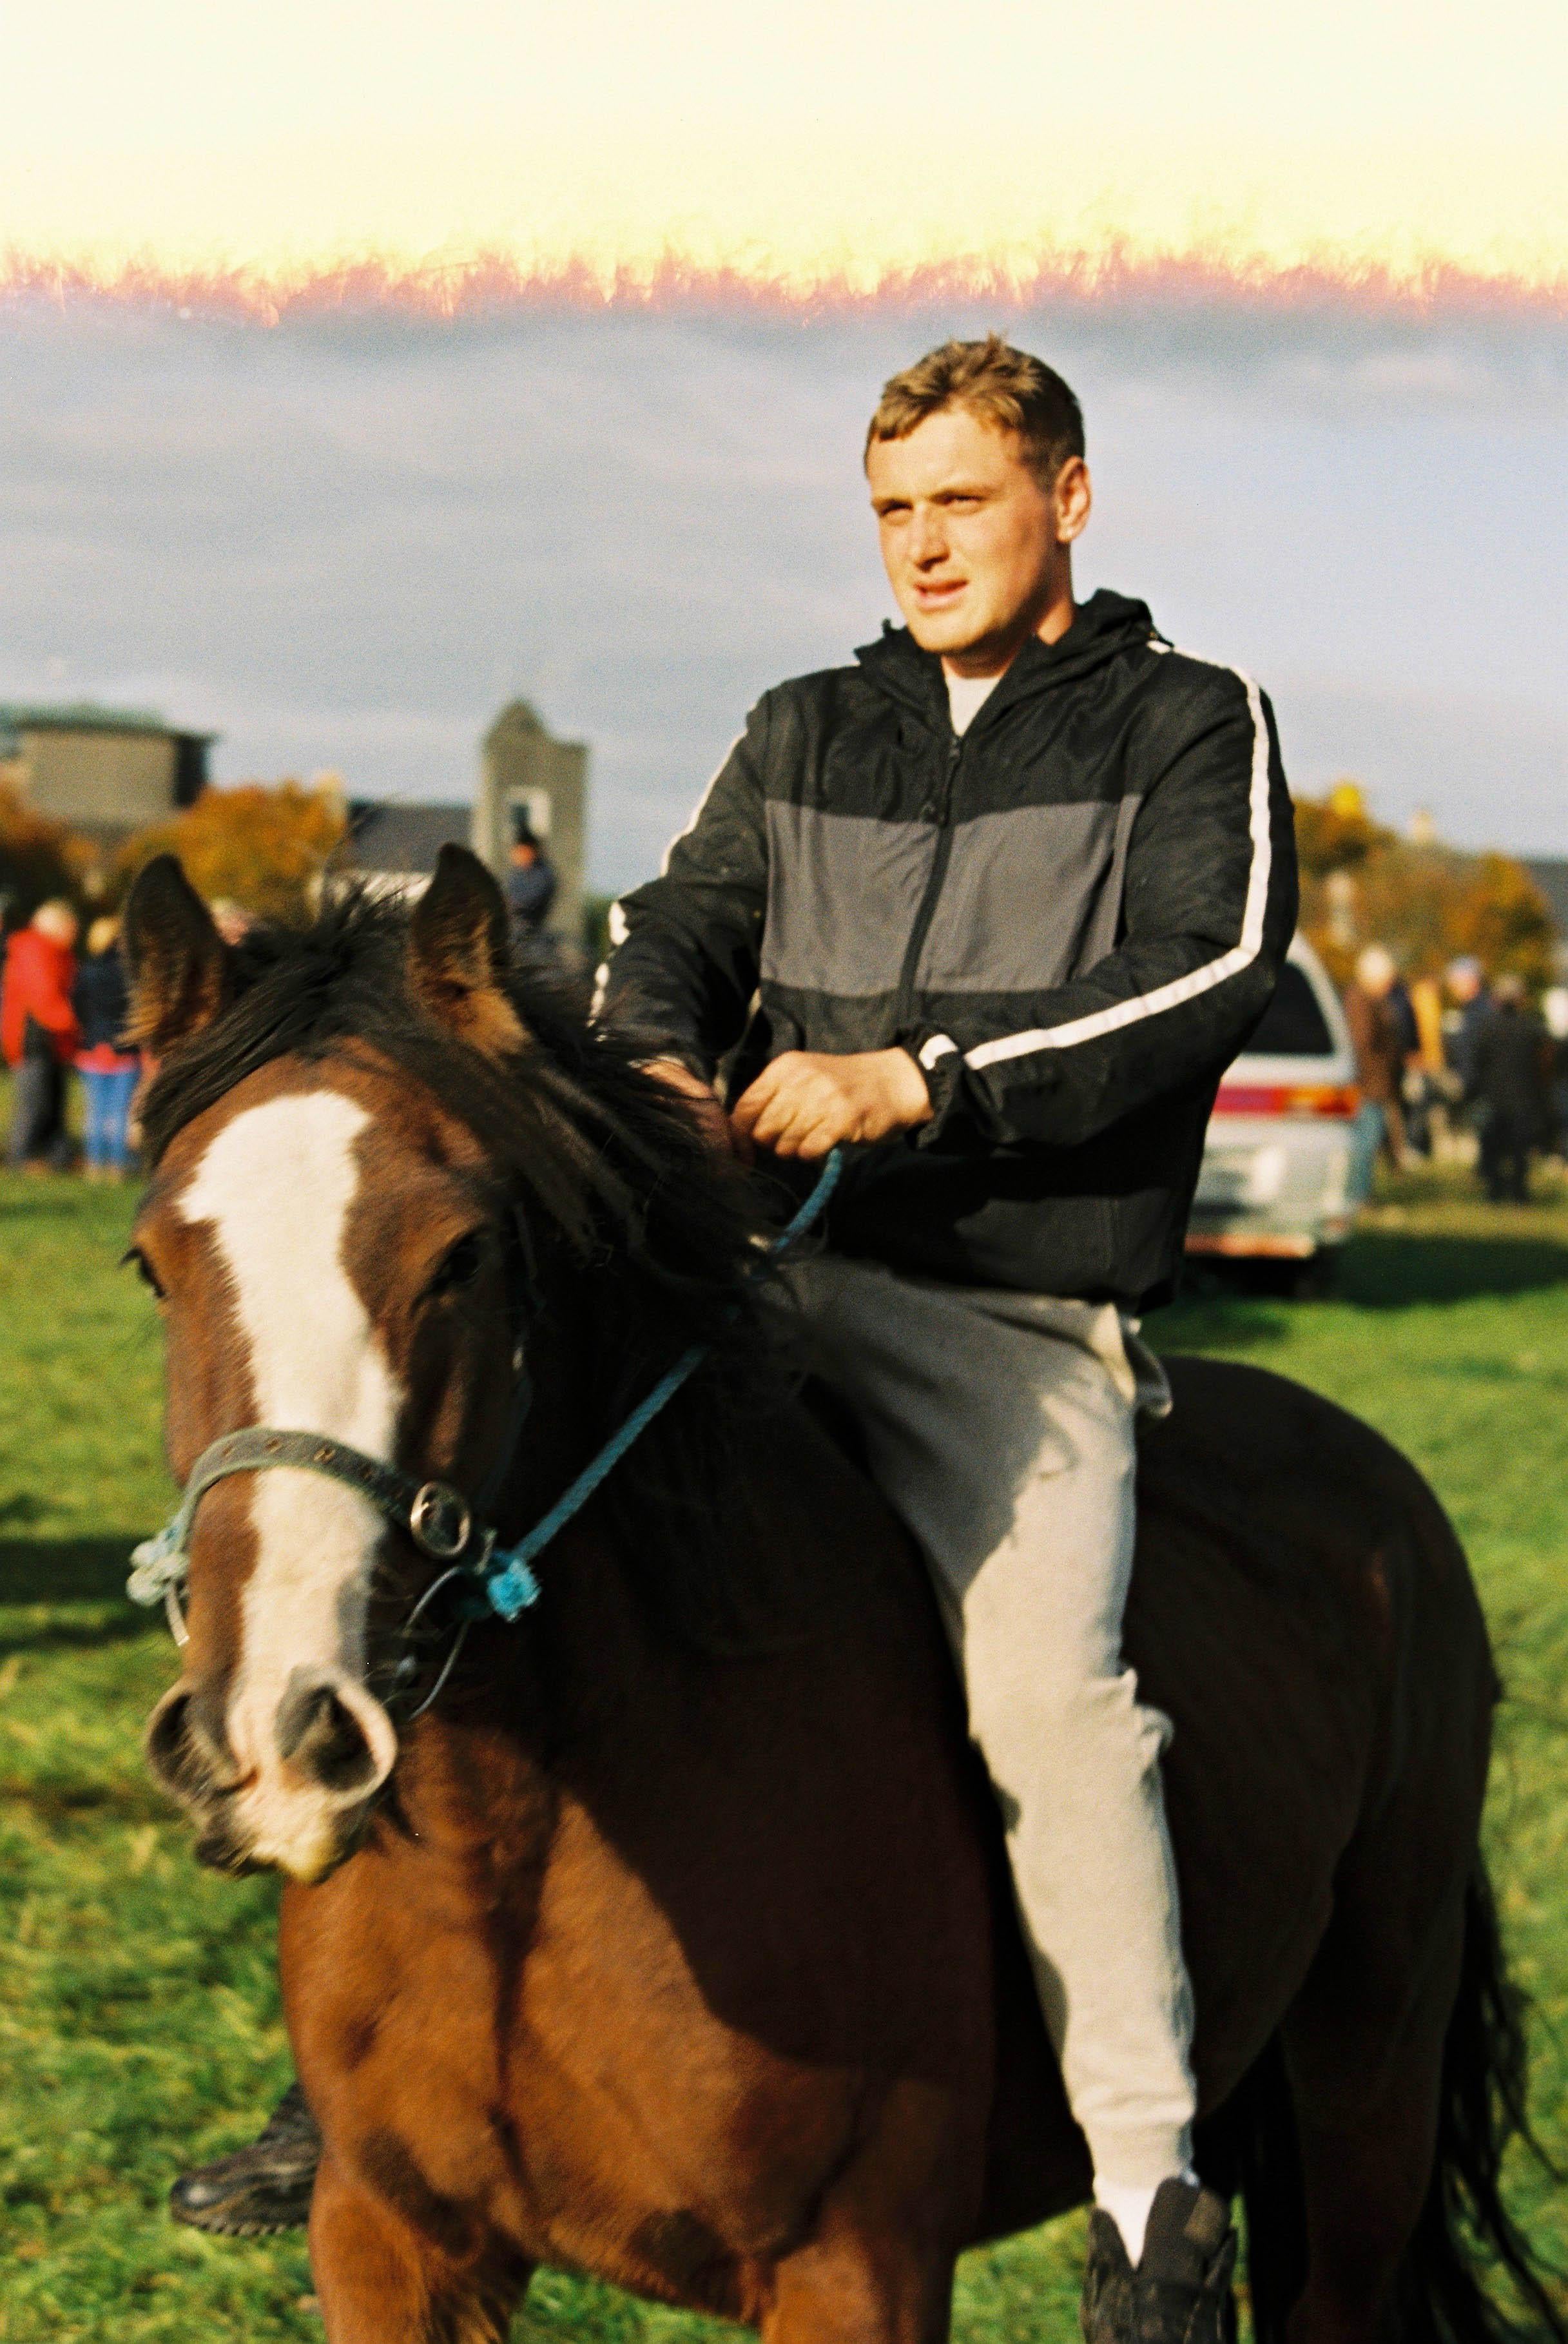 Marion Bergin Color Photograph - Young man on Horse - Ballinasloe Horse Fair, Ireland, 2018